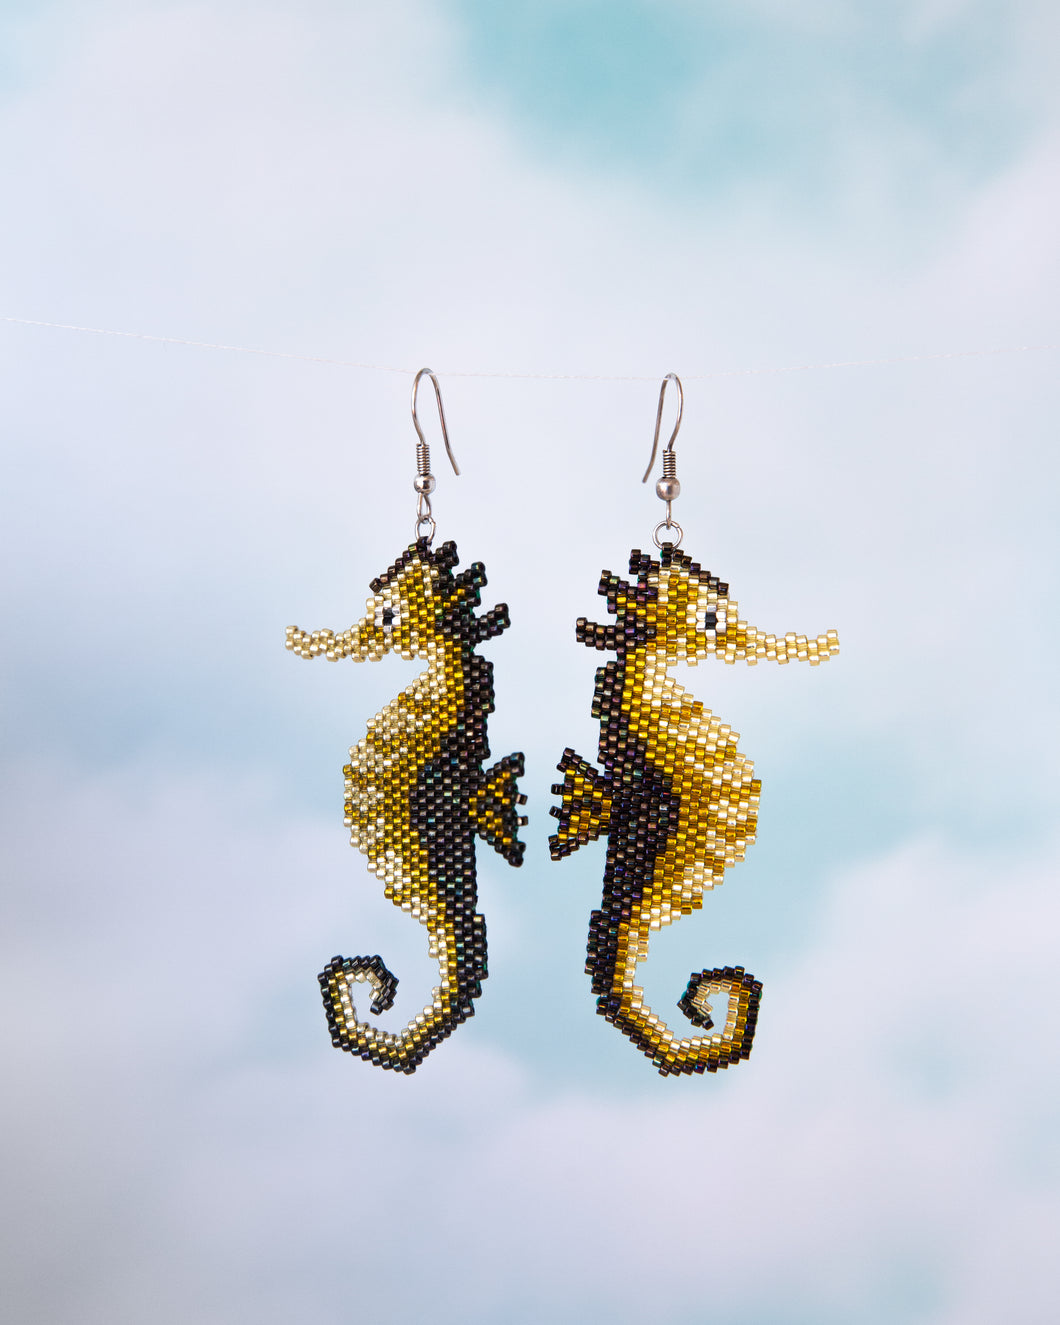 Alicia Wiese, Seahorse Earrings